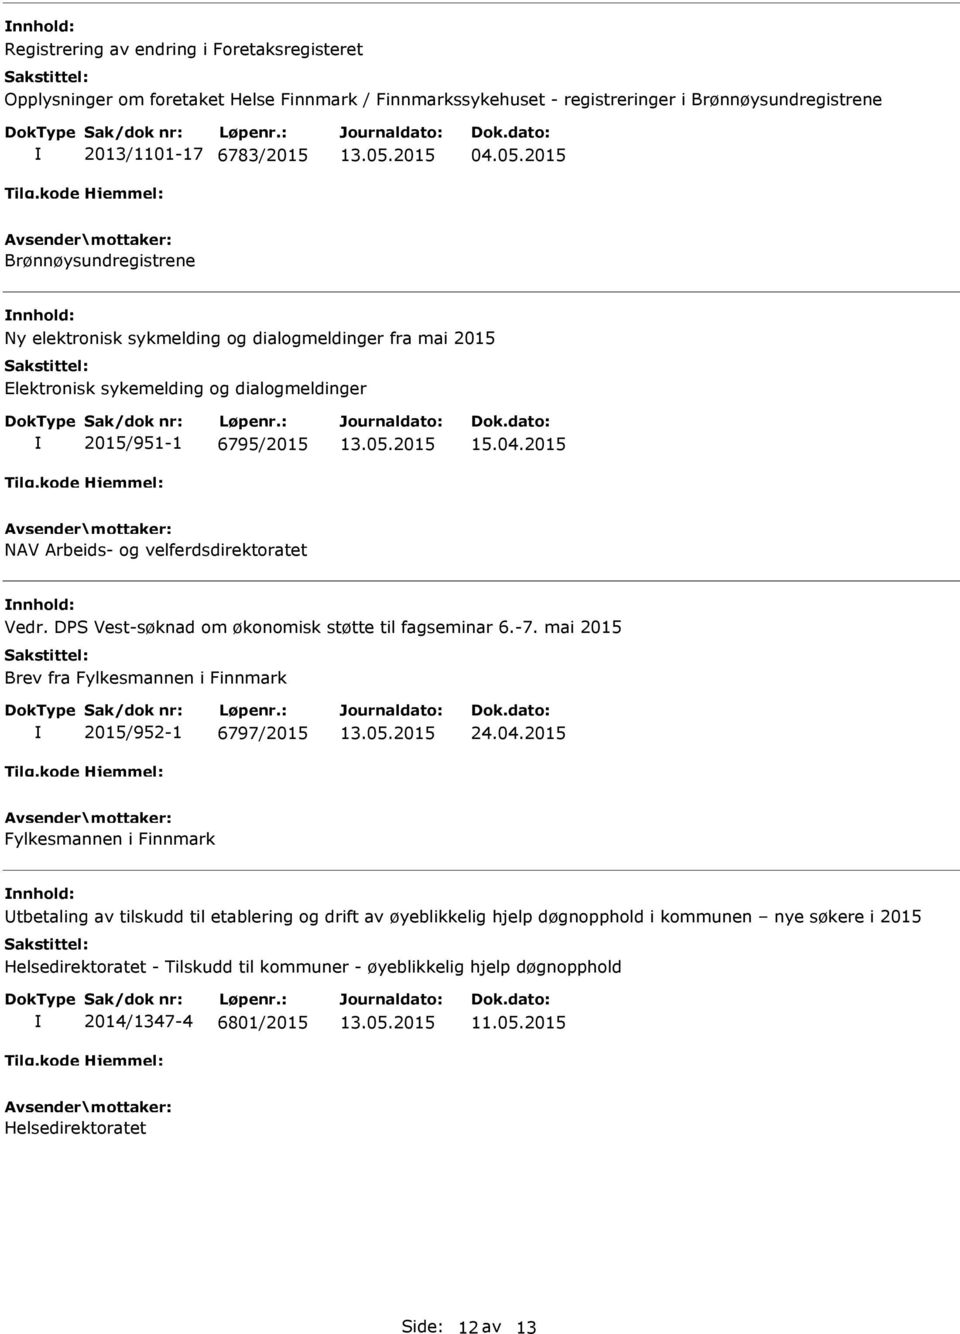 2015 NAV Arbeids- og velferdsdirektoratet nnhold: Vedr. DPS Vest-søknad om økonomisk støtte til fagseminar 6.-7. mai 2015 Brev fra Fylkesmannen i Finnmark 2015/952-1 6797/2015 24.04.